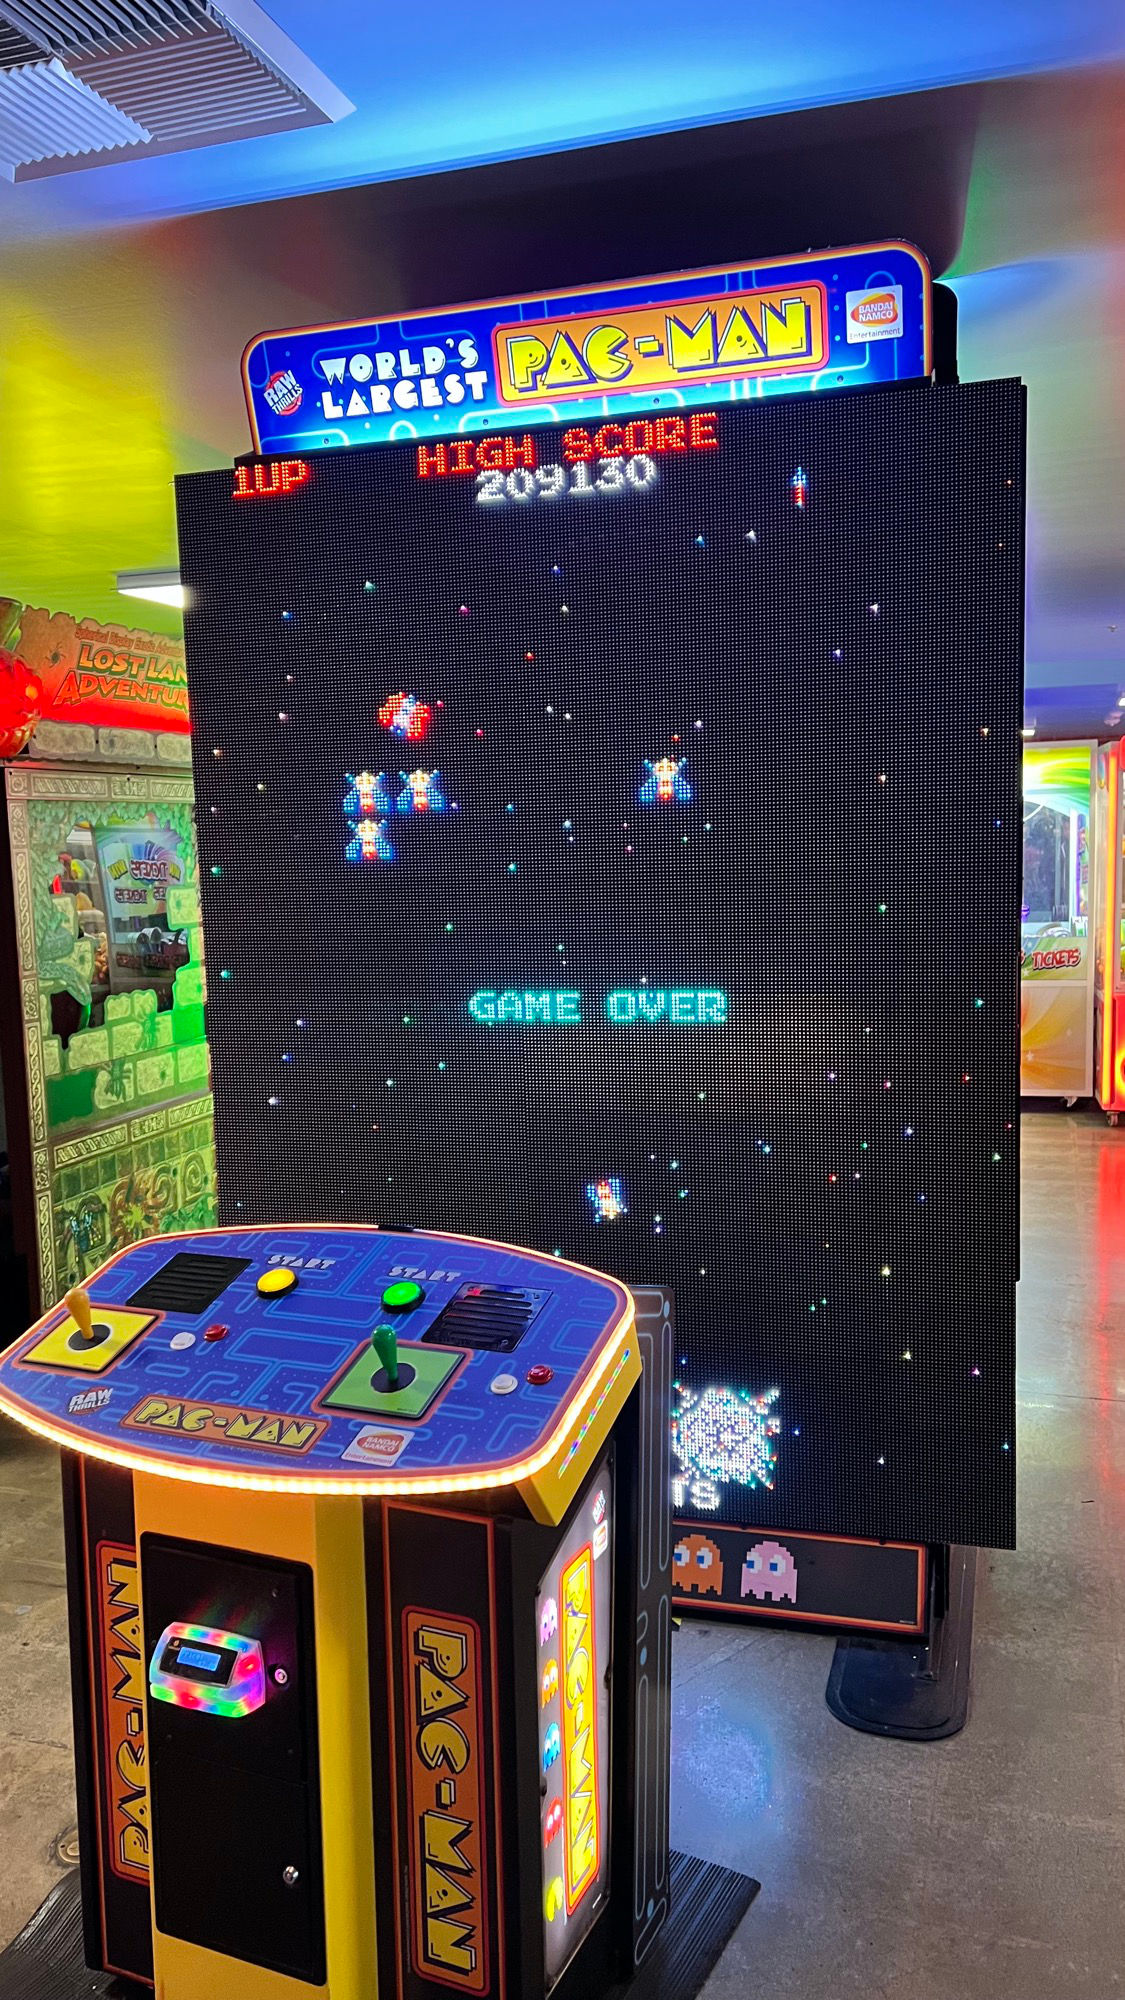 Boardwalk Arcade World's Largest Pac-Man